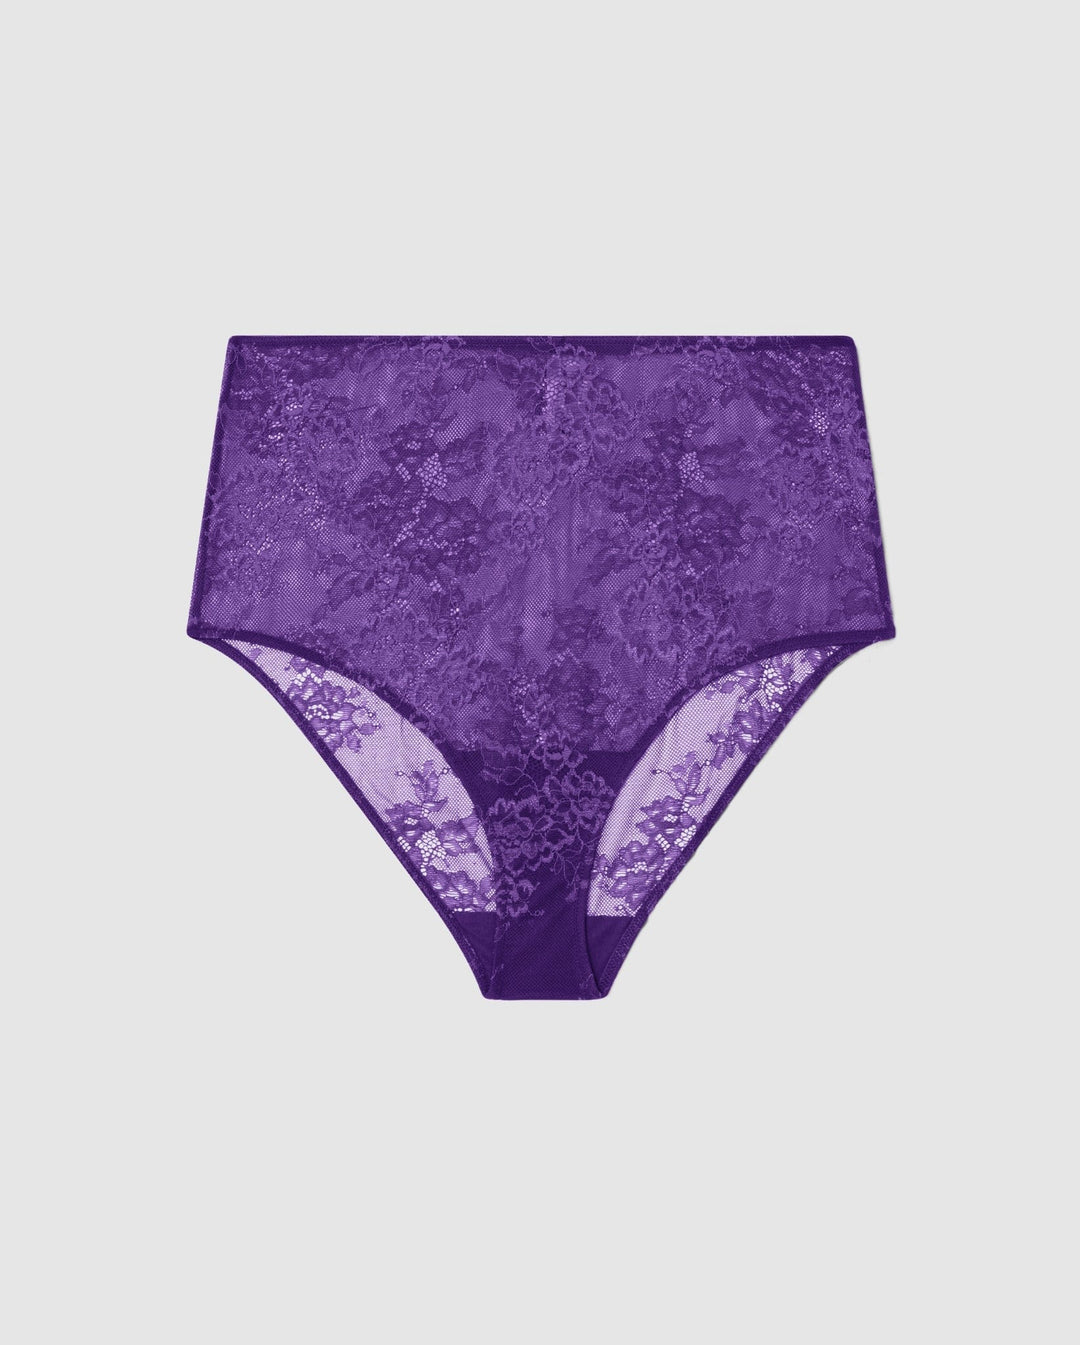 Saboteur Lace Highwaist Briefs 002 • Understatement Underwear